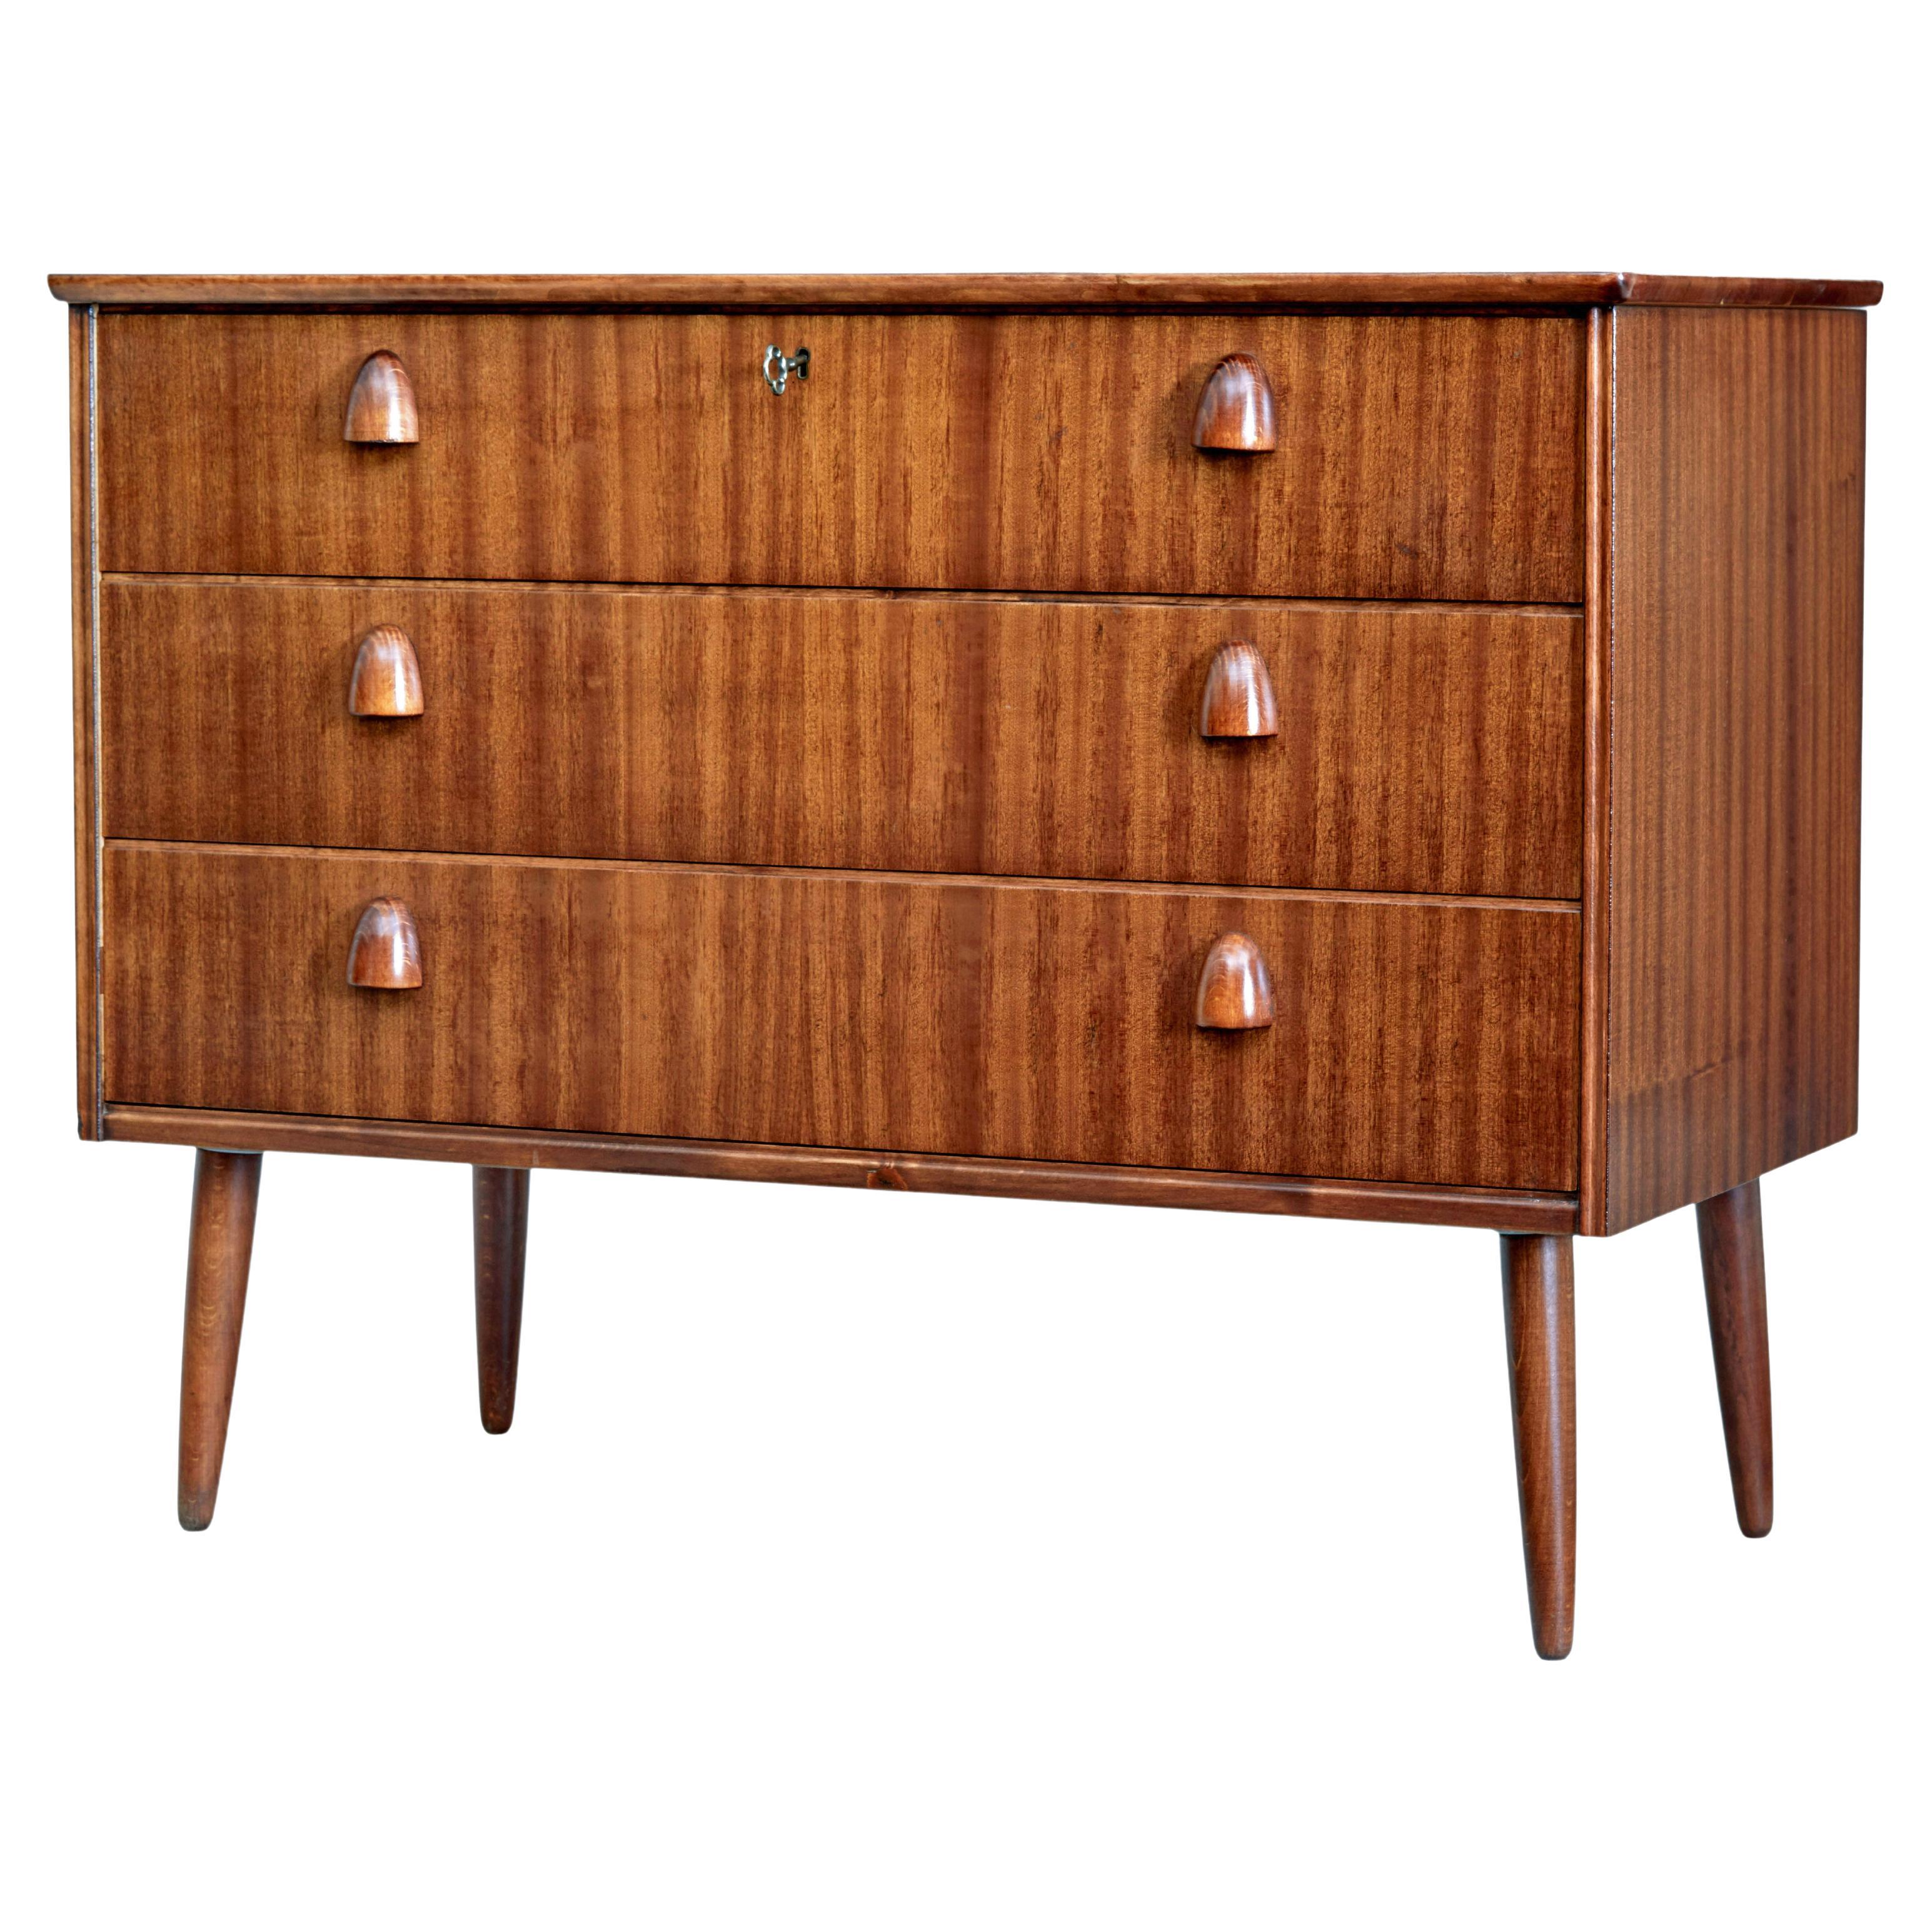 20th century Scandinavian teak chest of drawers